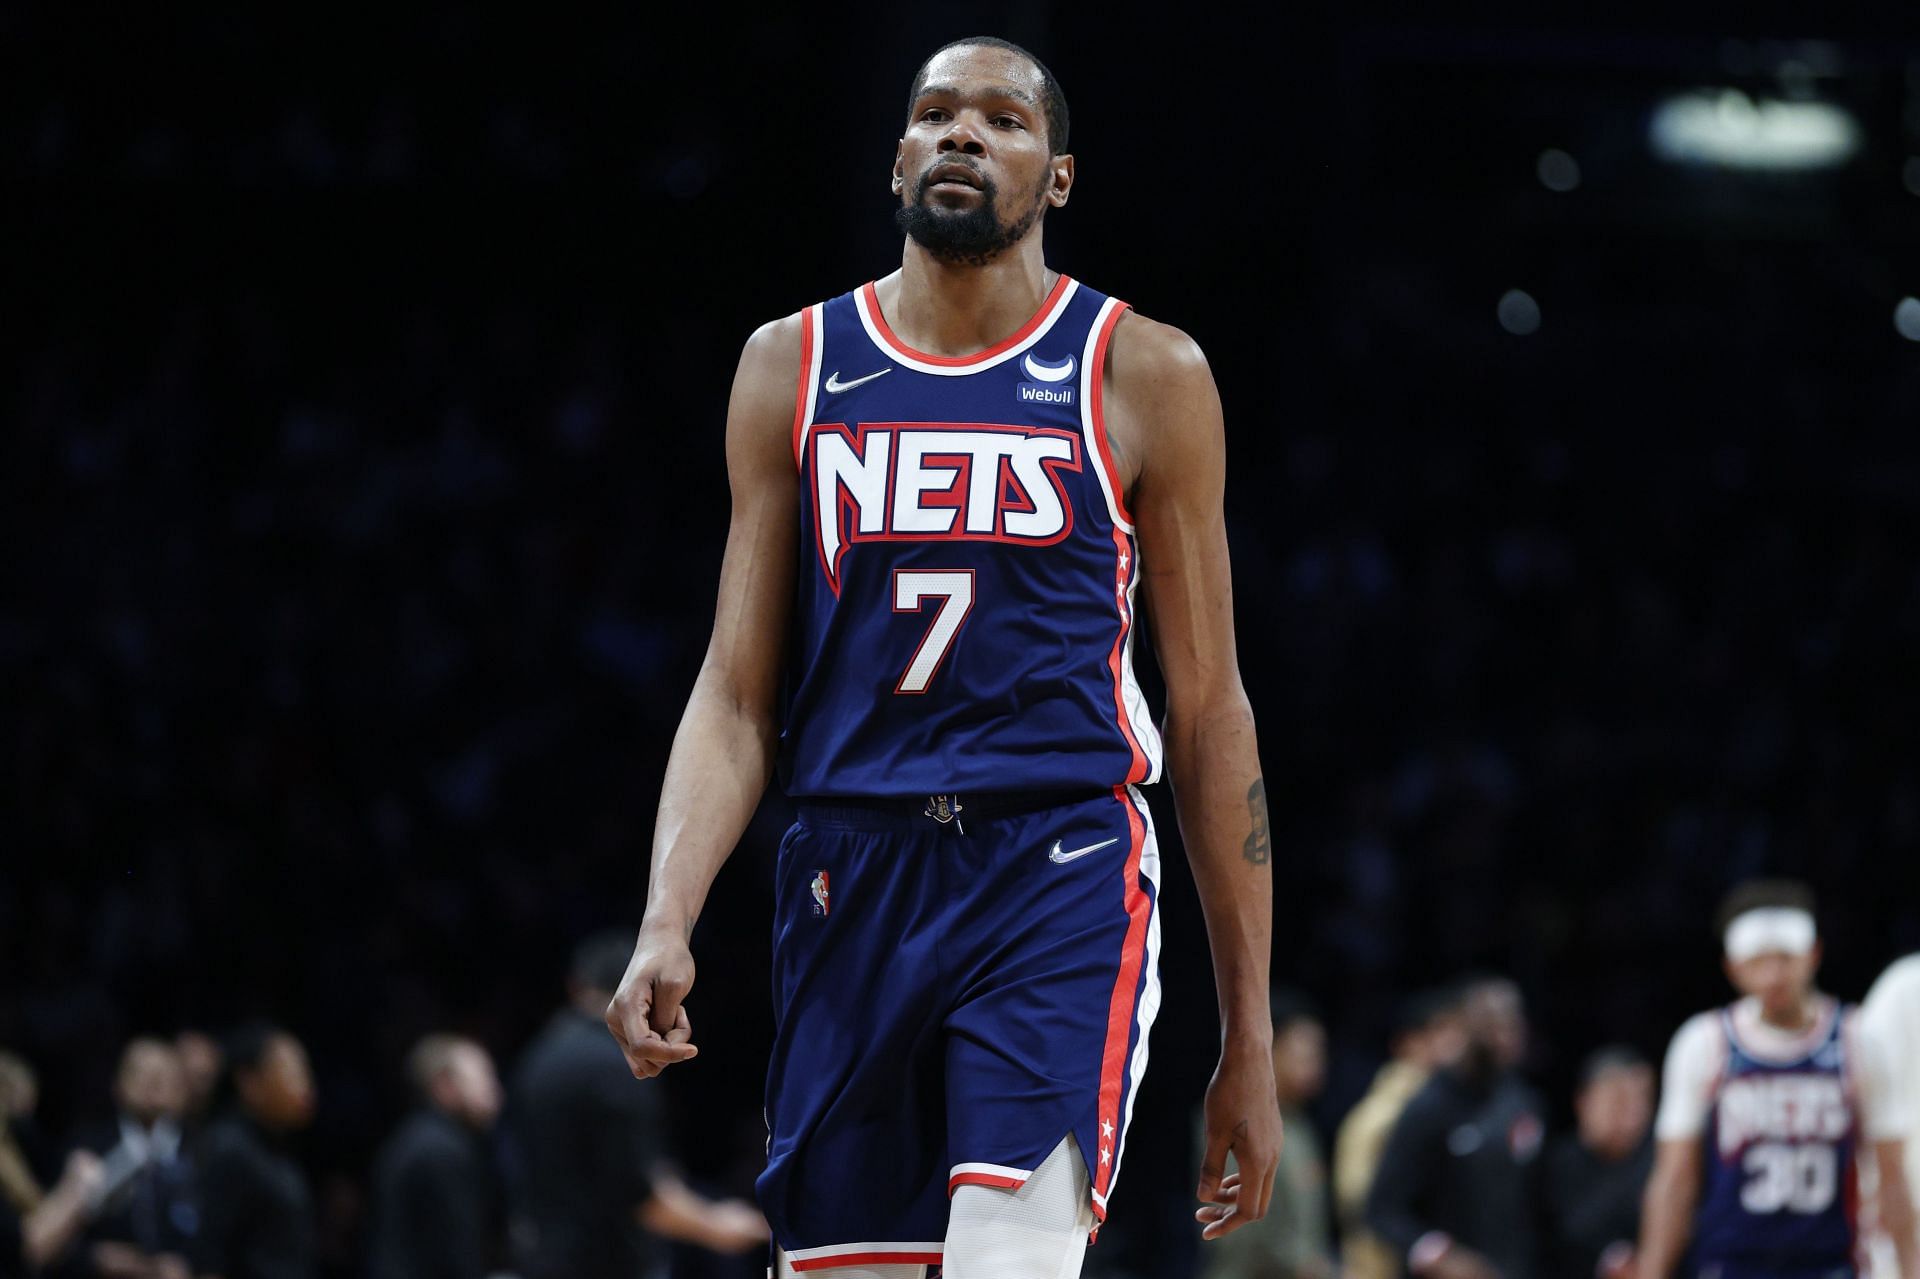 Brooklyn Nets star forward Kevin Durant Brooklyn Nets forward Kevin Durant